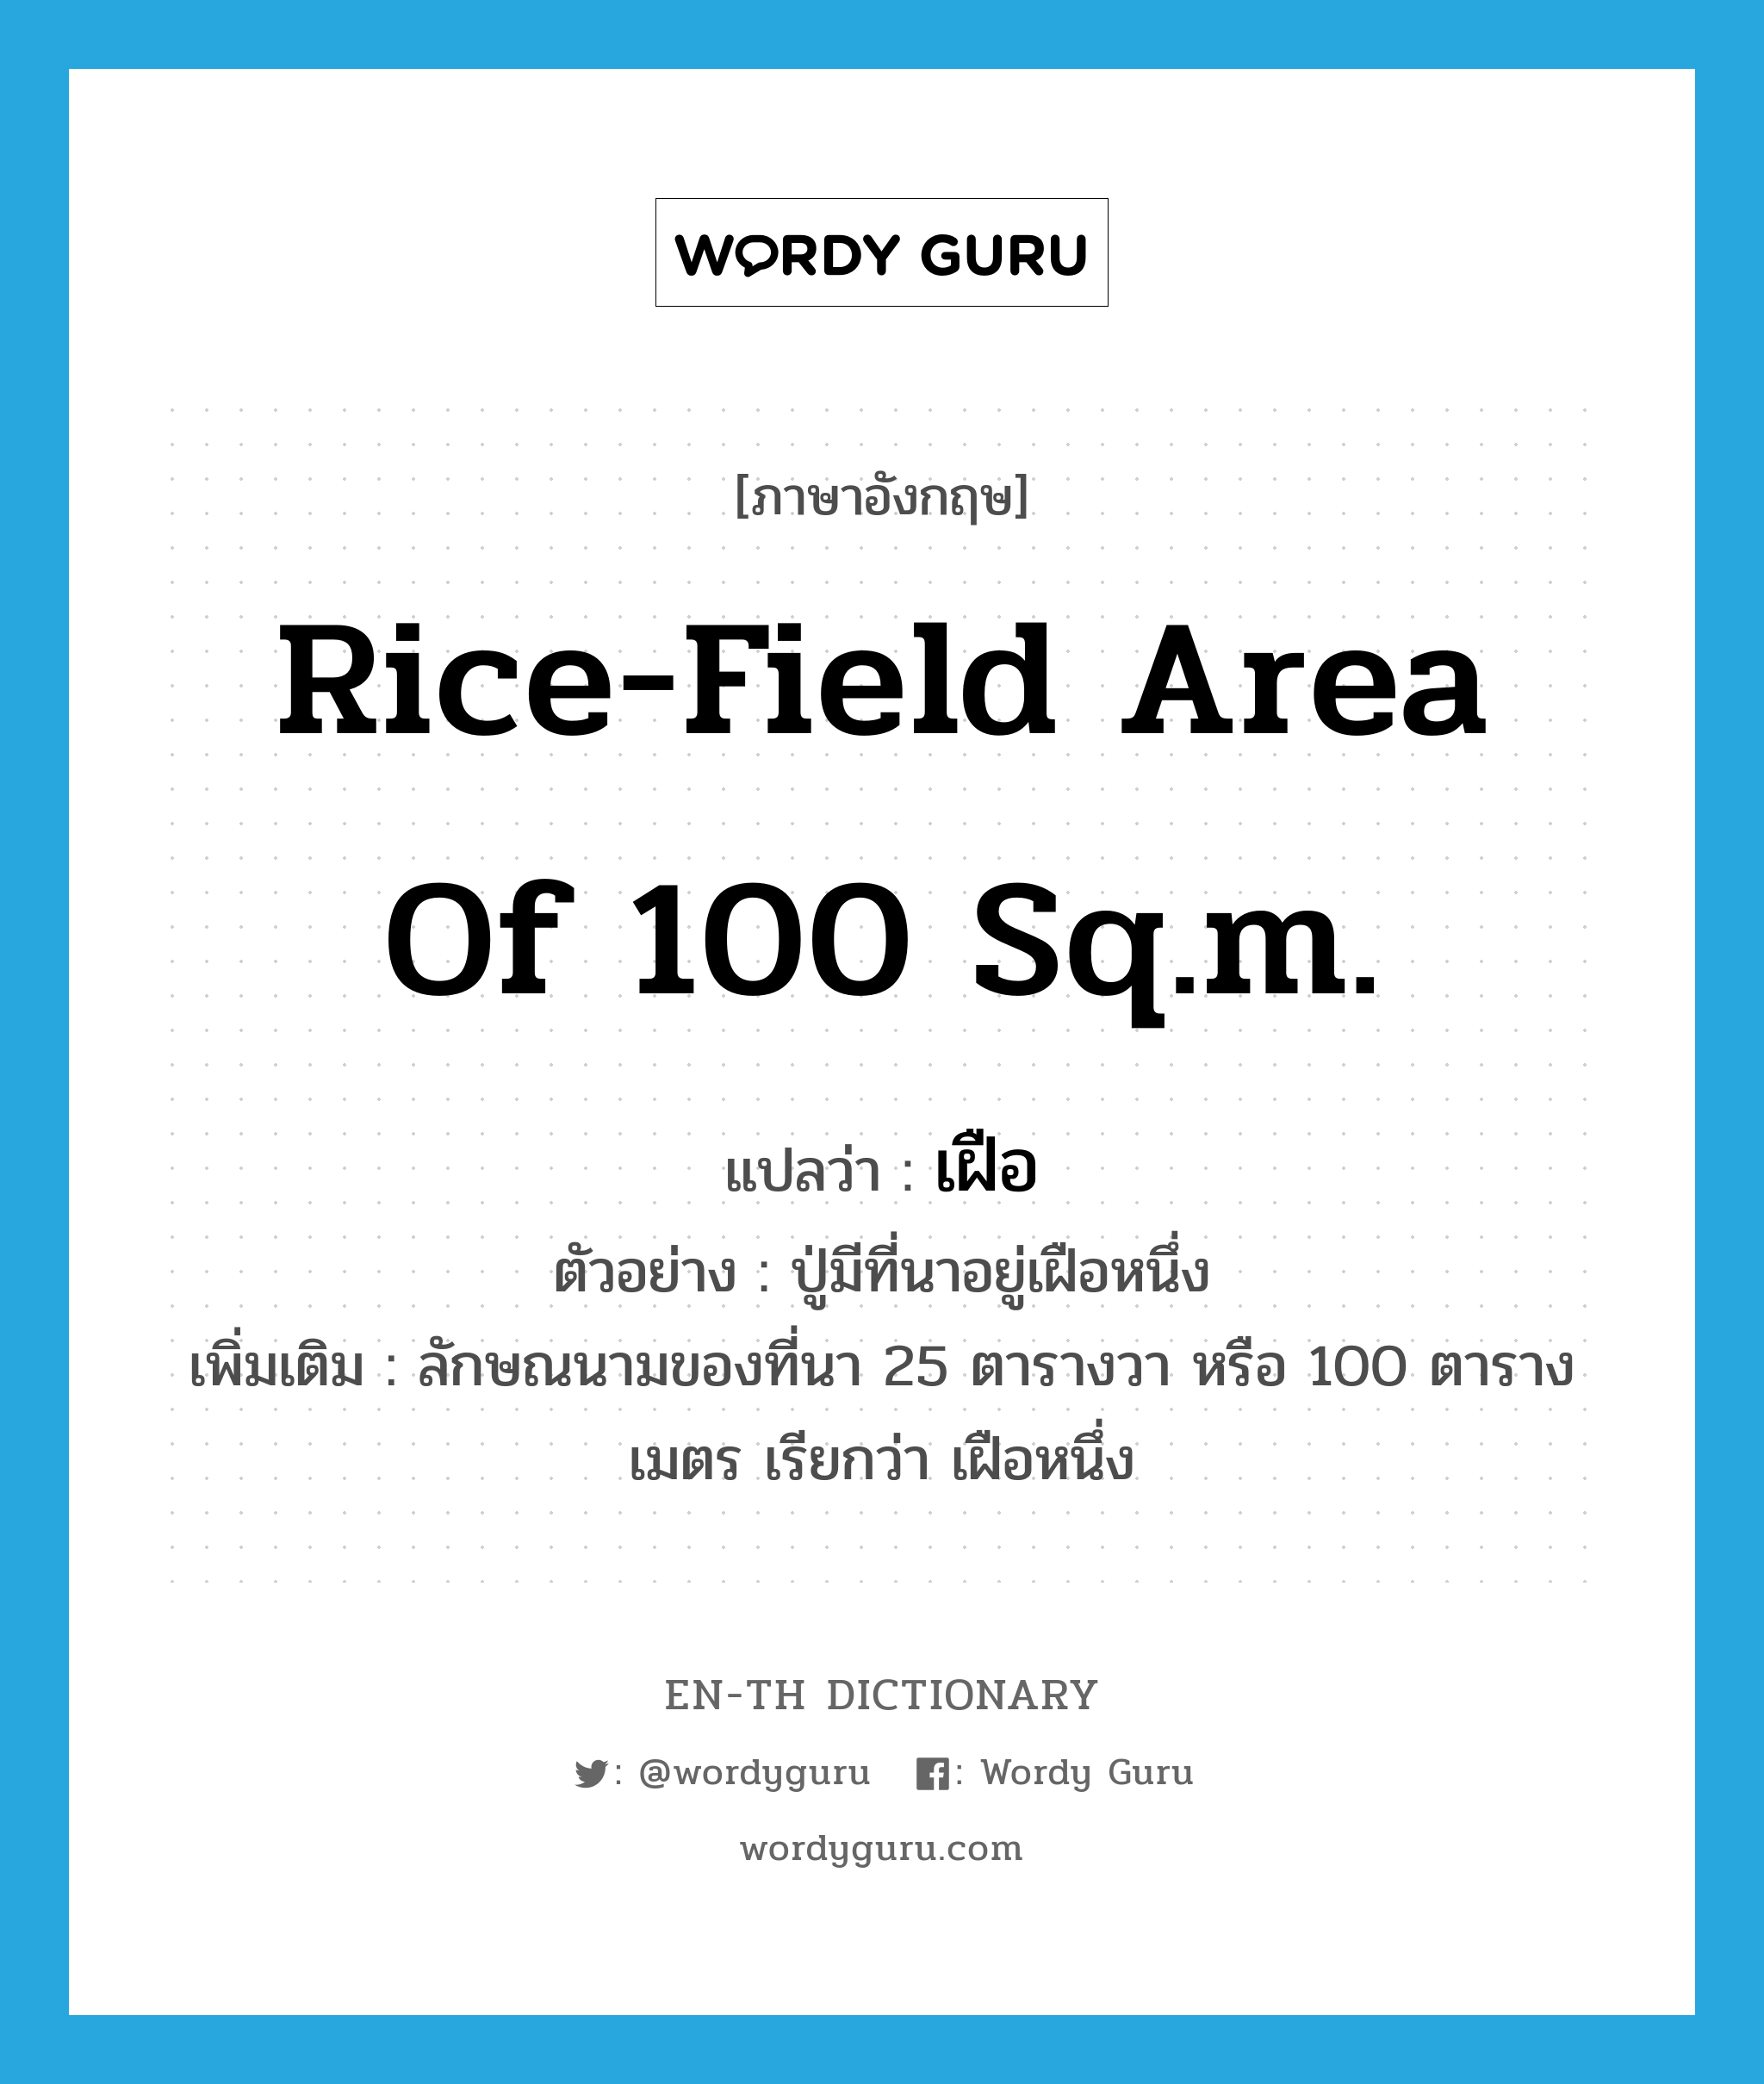 เฝือ ภาษาอังกฤษ?, คำศัพท์ภาษาอังกฤษ เฝือ แปลว่า rice-field area of 100 sq.m. ประเภท CLAS ตัวอย่าง ปู่มีที่นาอยู่เฝือหนึ่ง เพิ่มเติม ลักษณนามของที่นา 25 ตารางวา หรือ 100 ตารางเมตร เรียกว่า เฝือหนึ่ง หมวด CLAS